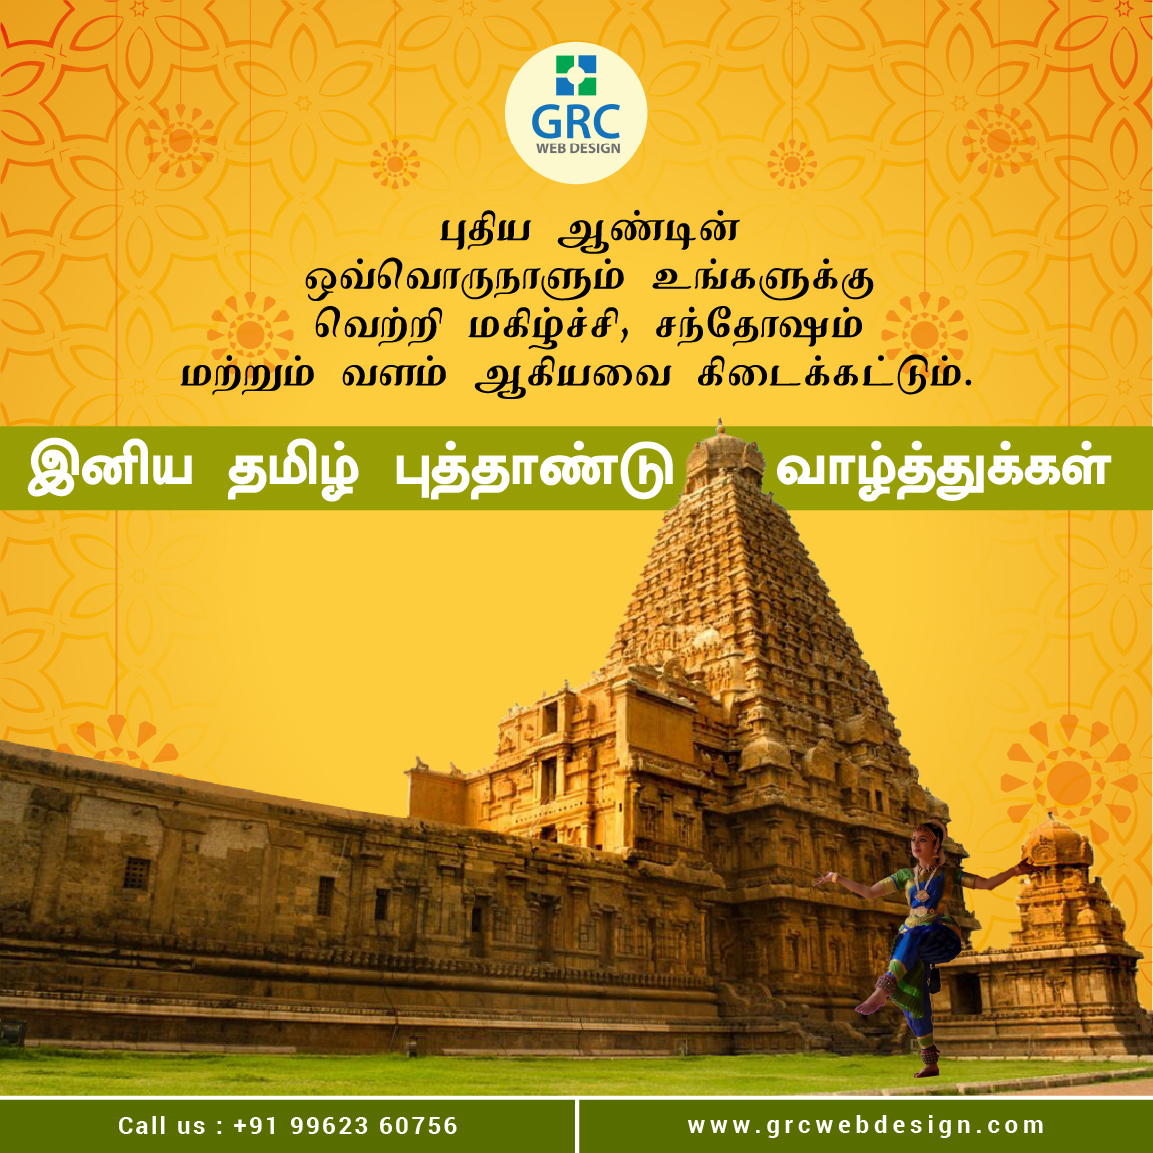 Happy Tamil Puthandu from GRC Web Design!

#HappyTamilNewYear #PuthanduVazhtukkal #PuthuVarsham #TamilCulture #WebsiteDesign #GRCWebDesign #TamilNewYear2024
#SubhakritPuthandu #Pongal
#TamilNewYearFestival #TamilTraditions #NewYearNewBeginnings #Vellore